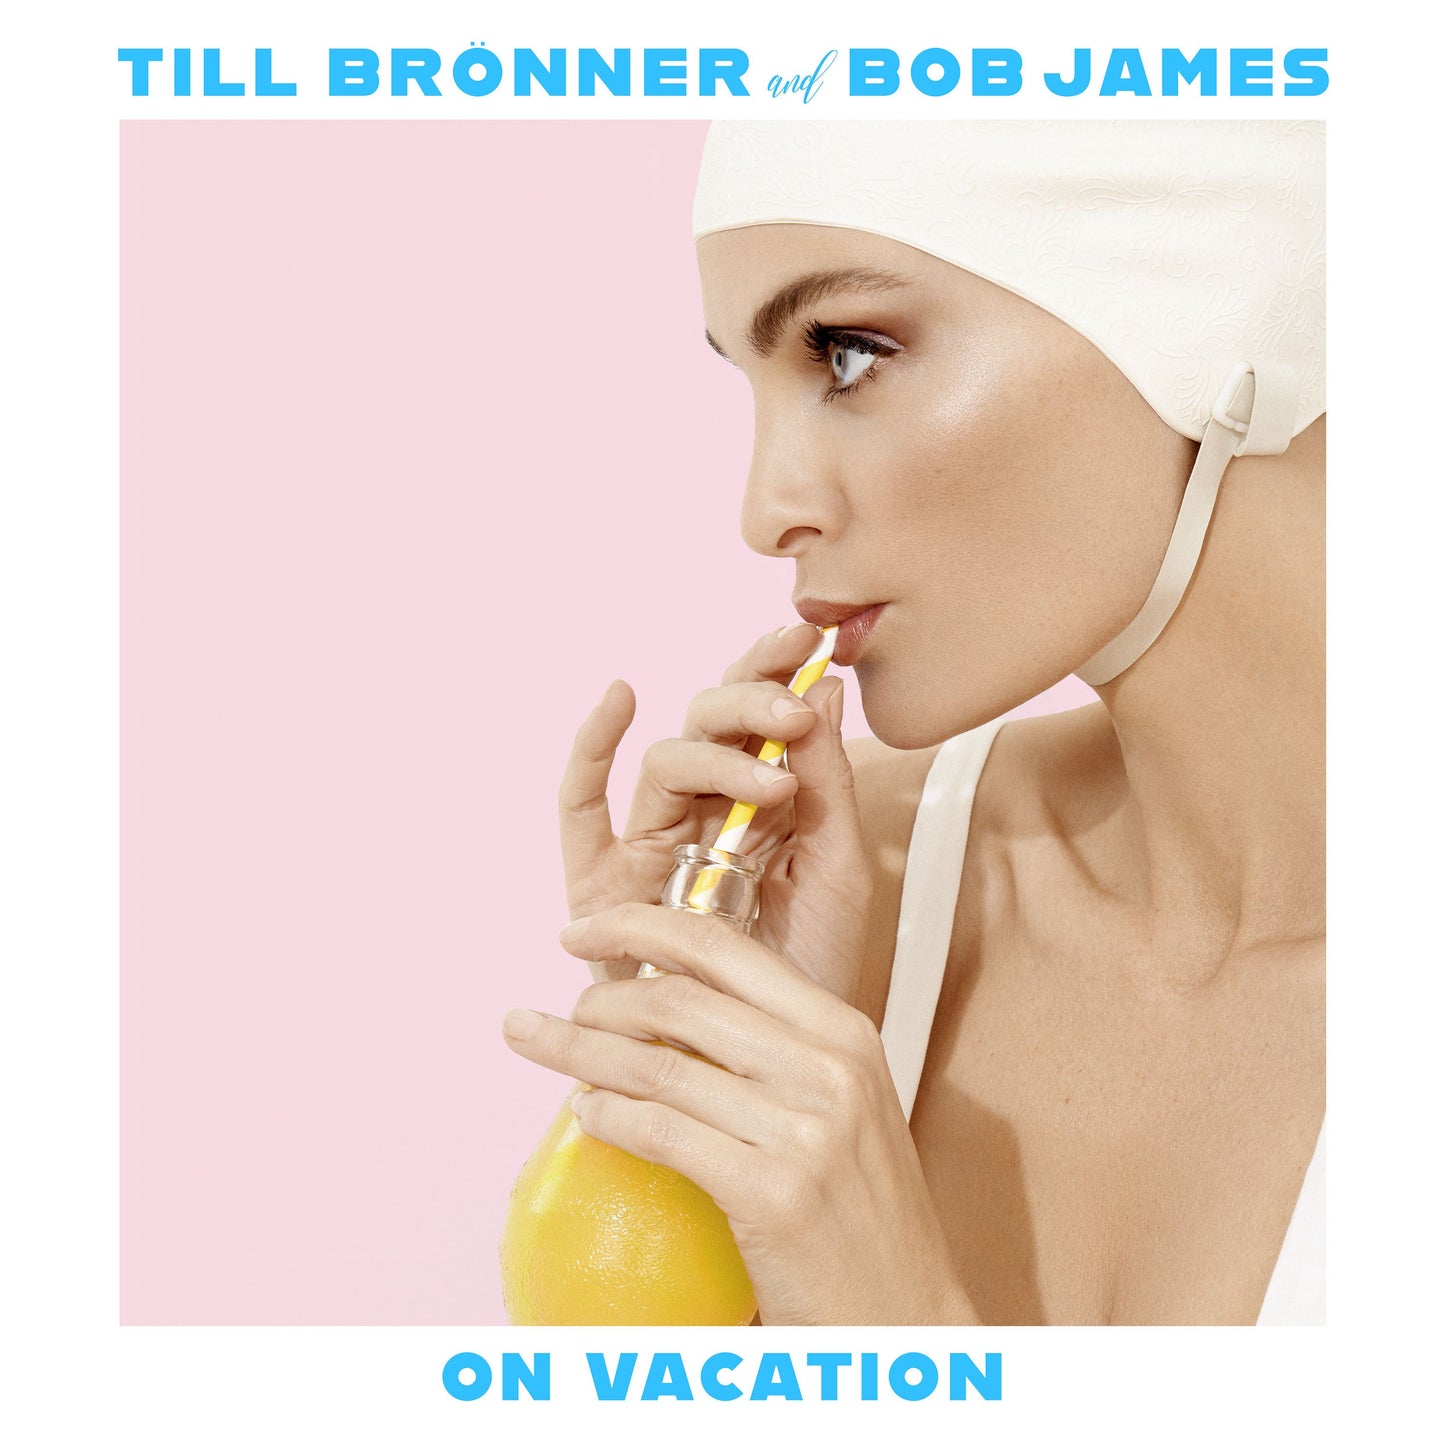 On Vacation / Till Bronner & Bob James